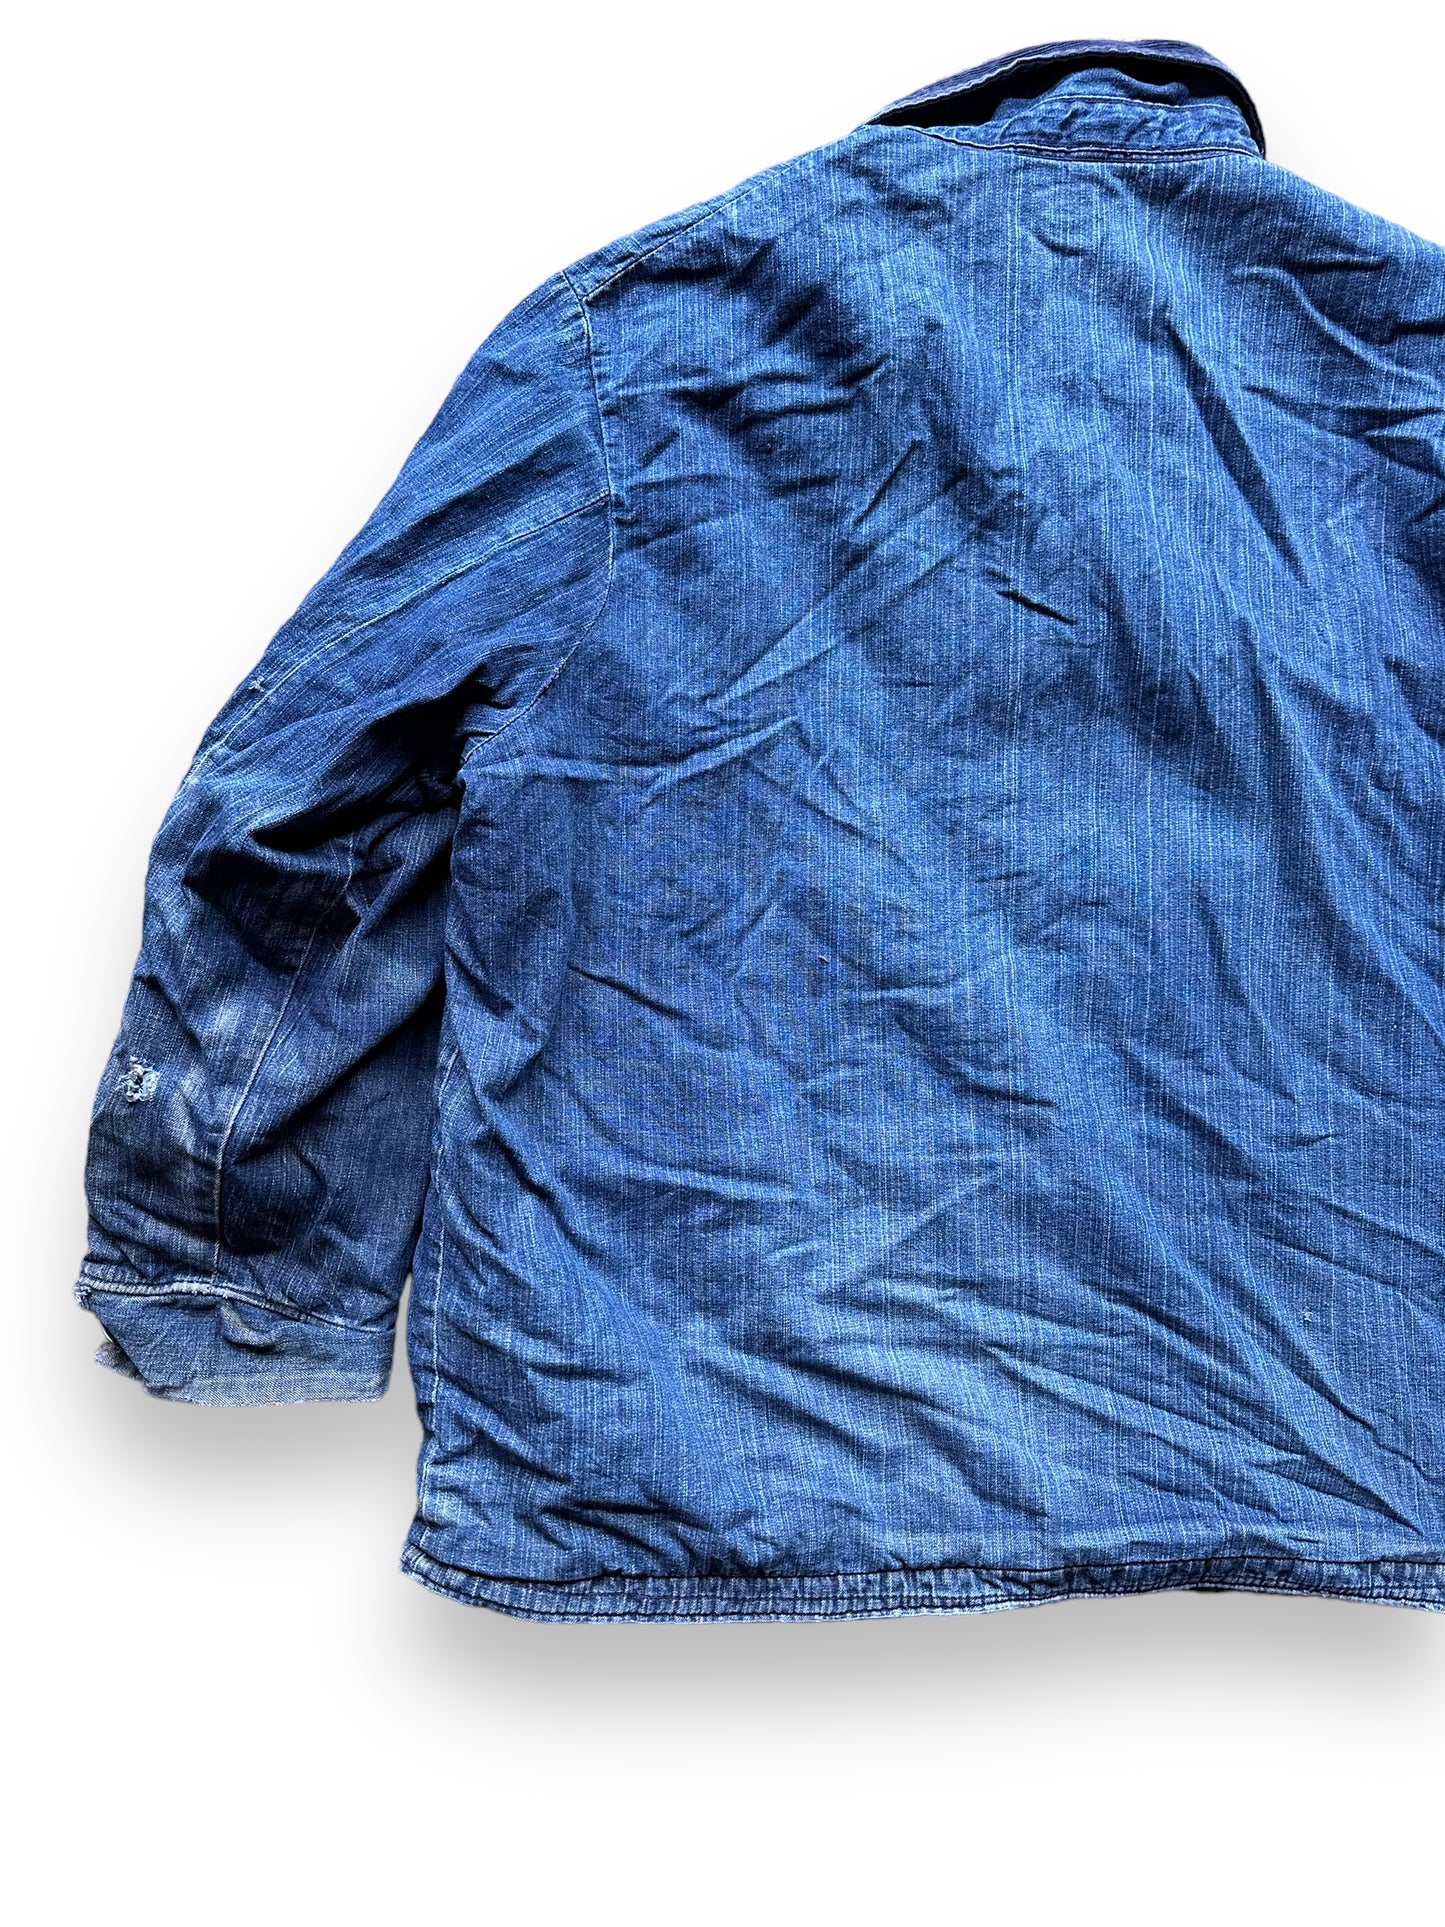 Rear Left Side View of Vintage Blanket Lined Wrangler Blue Bell Chore Coat SZ 50 | Vintage Denim Jacket Seattle | Seattle Vintage Clothing